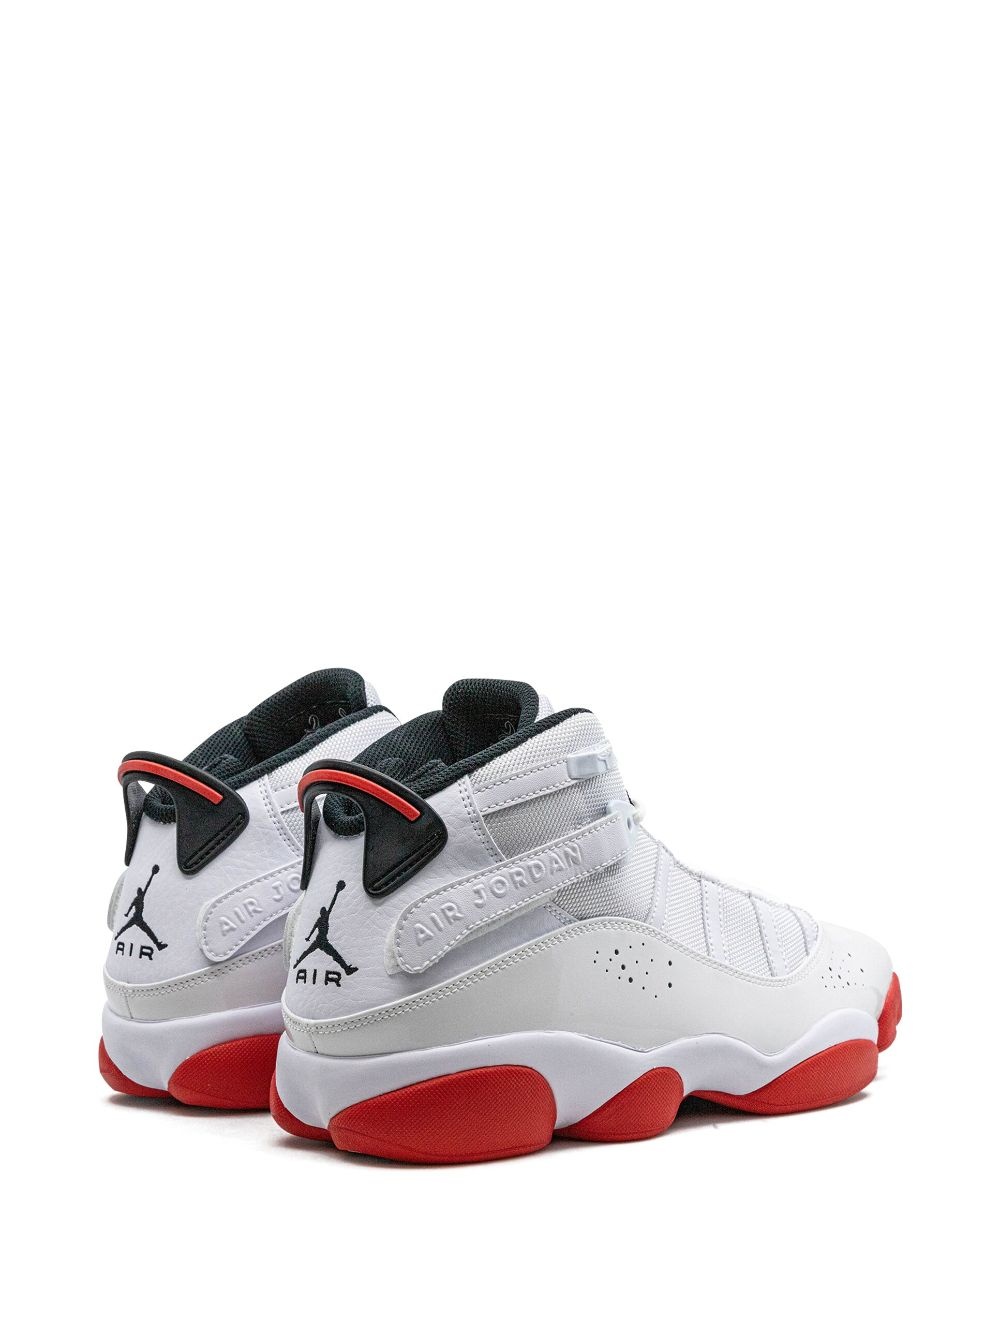 Jordan 6 Rings sneakers - 3